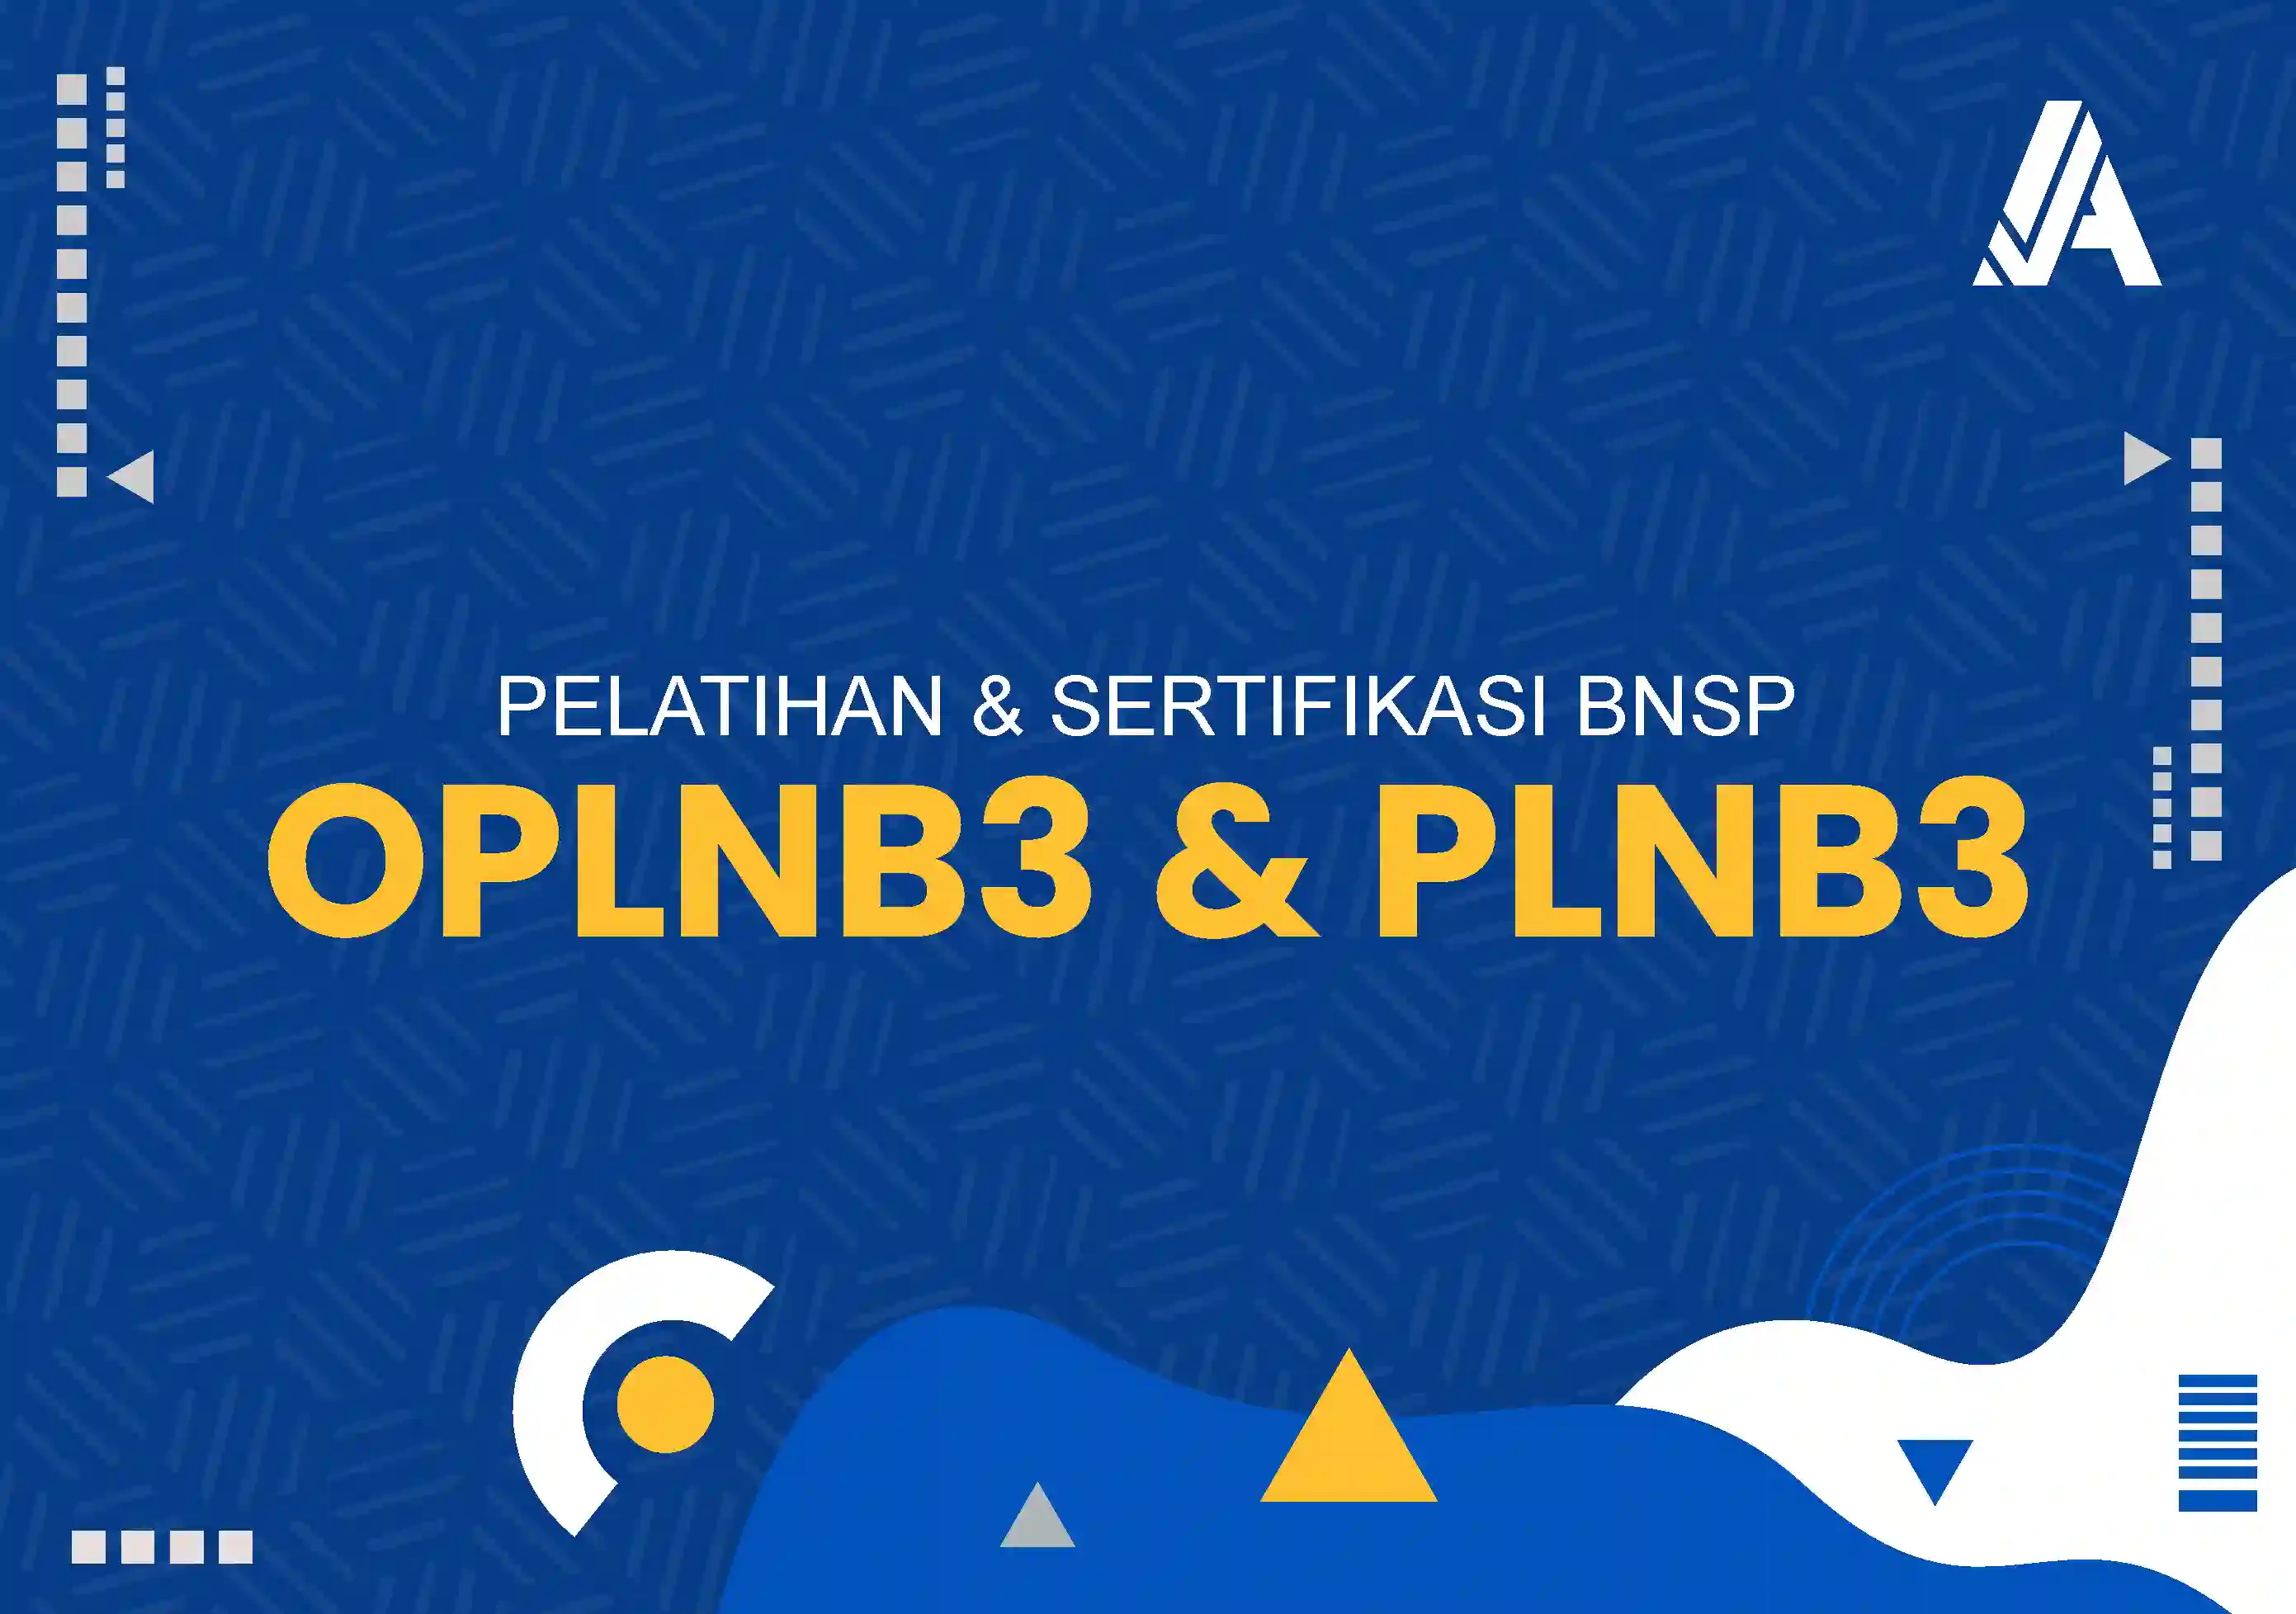 OPLNB3 | PLNB3